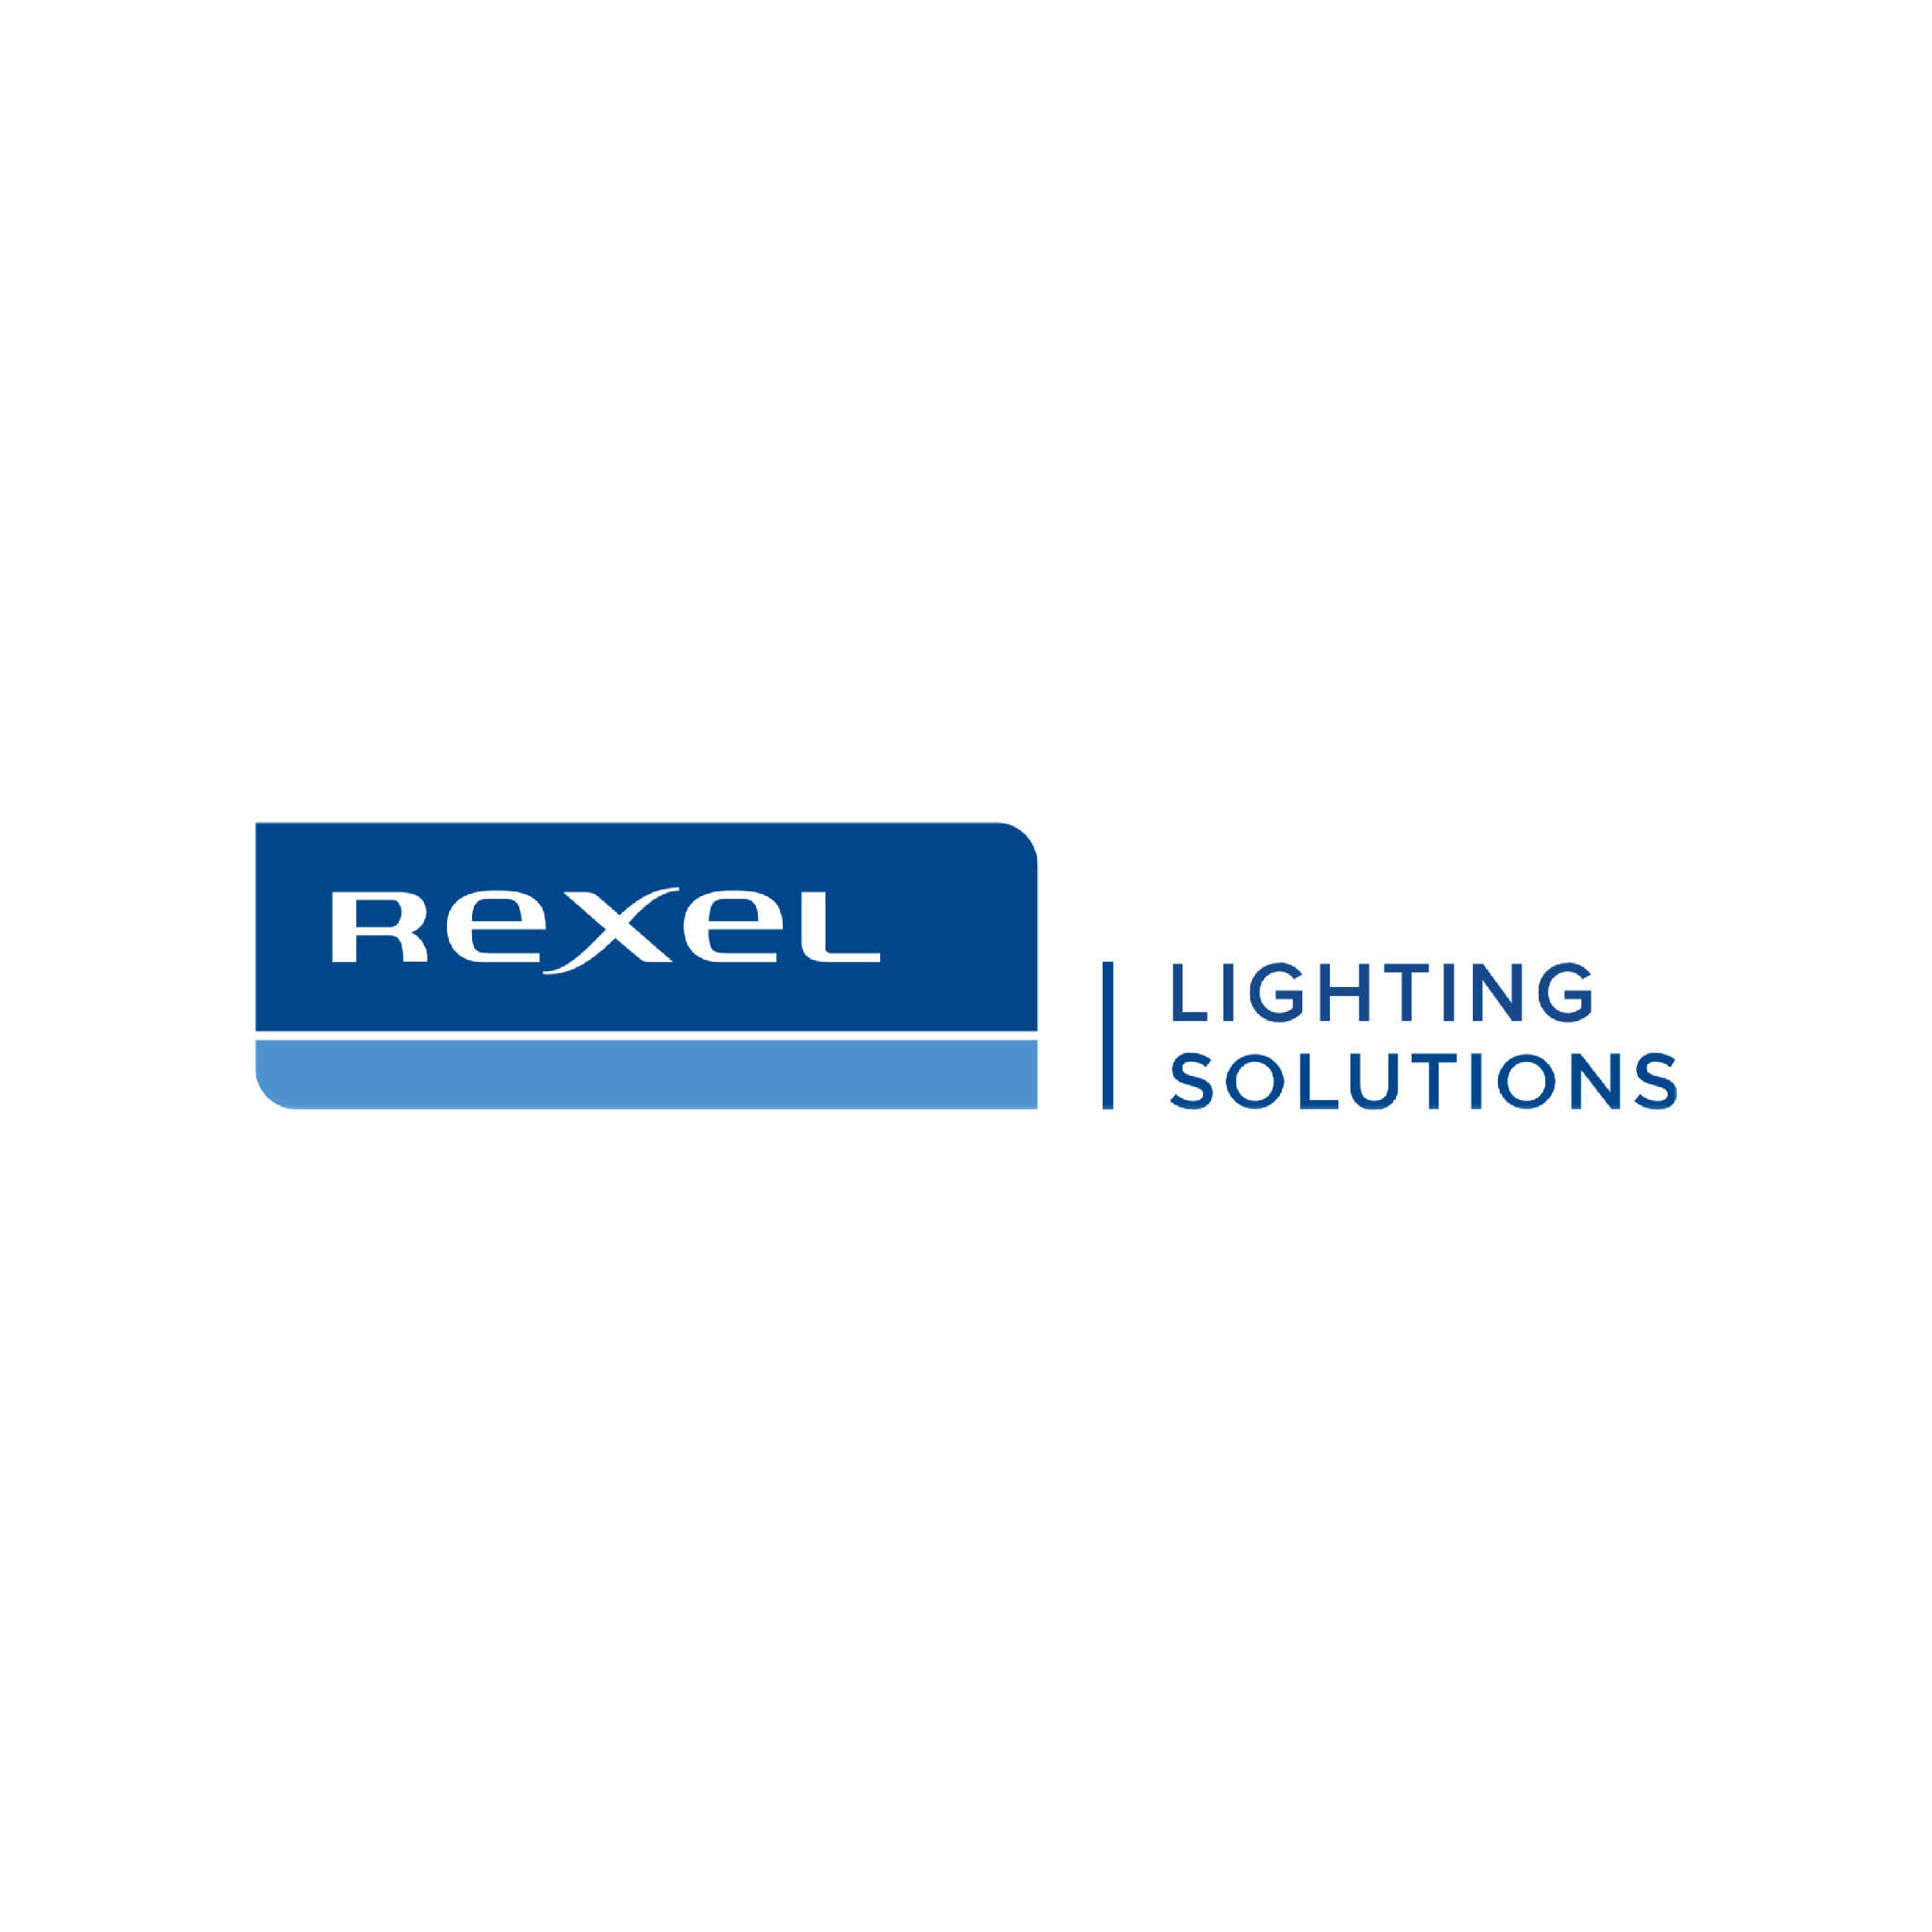 Rexel Lighting